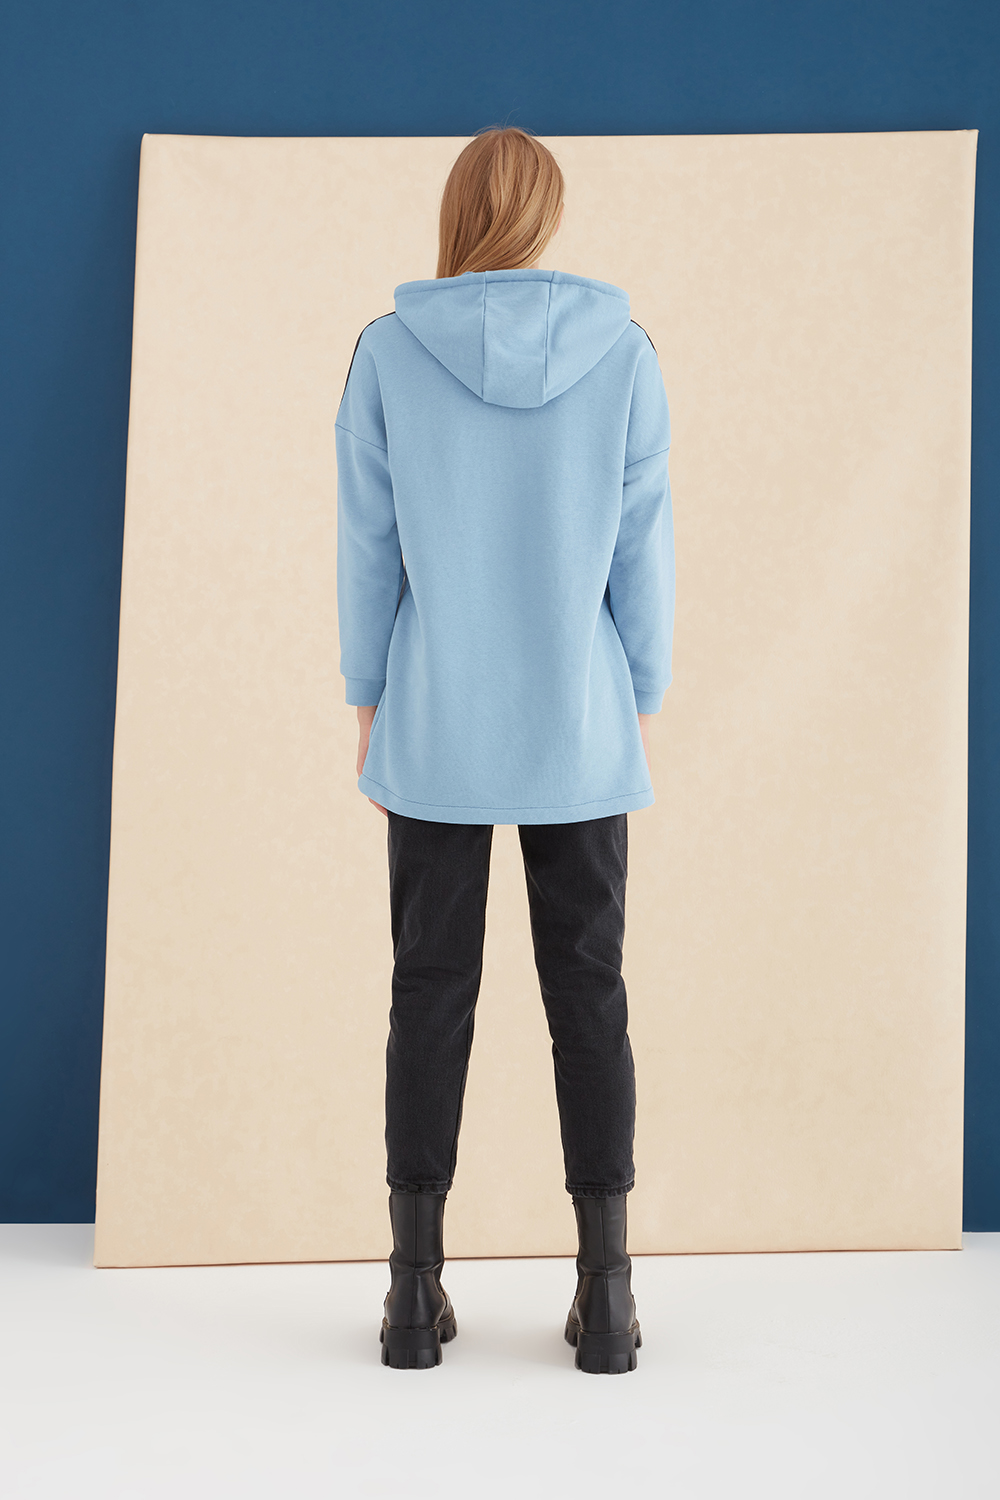 Hooded Blue Printed Sweatshirt